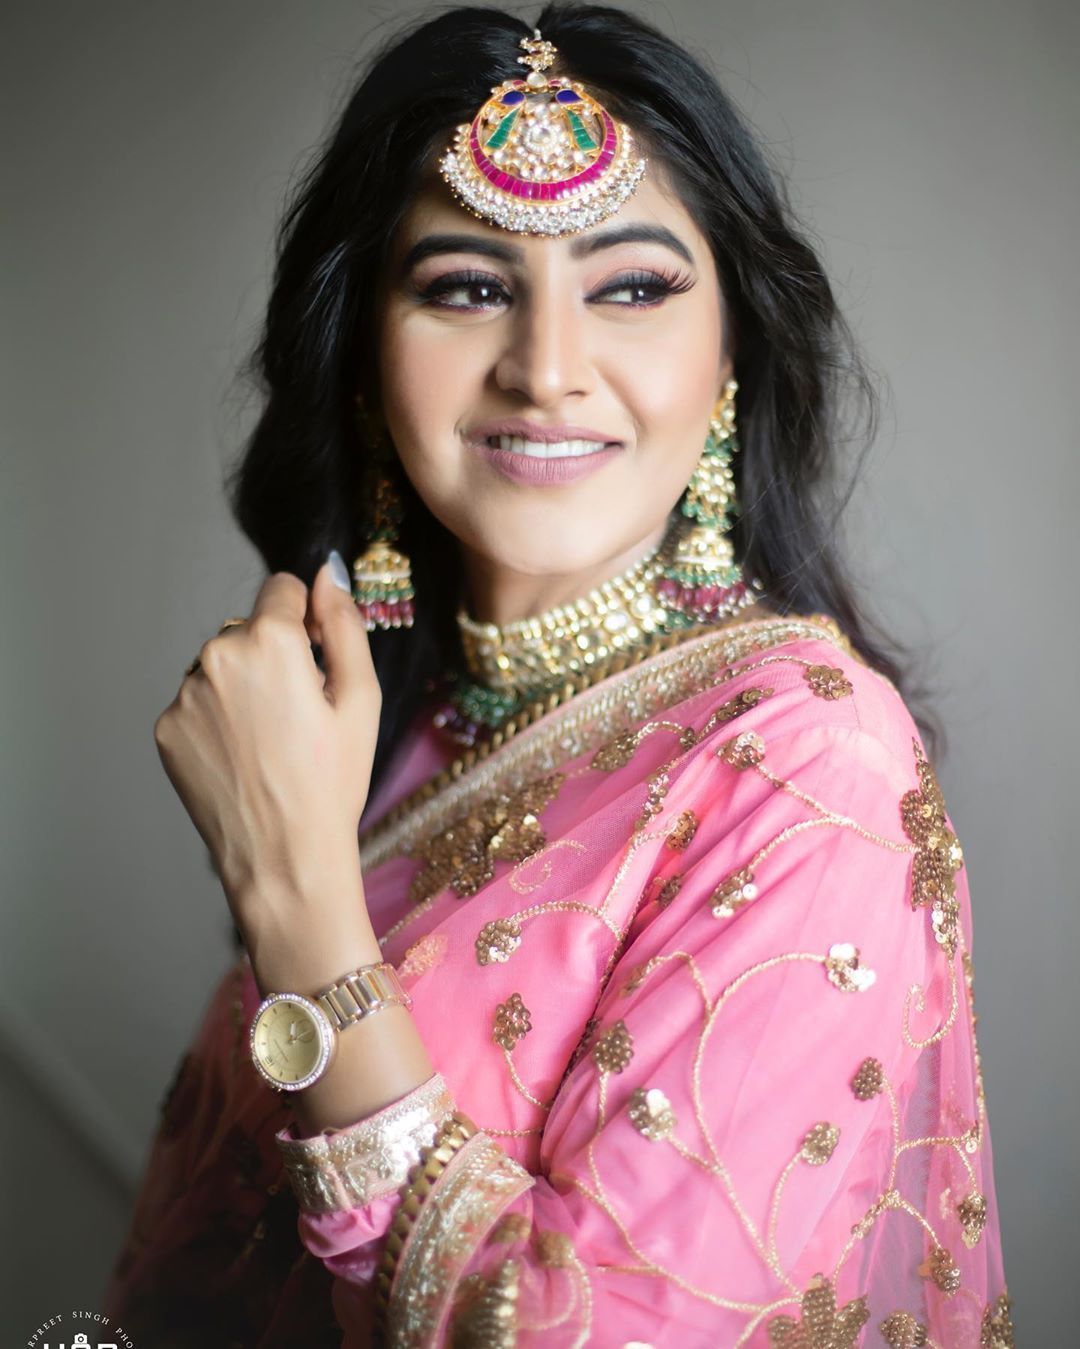 Baani Sandhu. Punjabi wedding dress